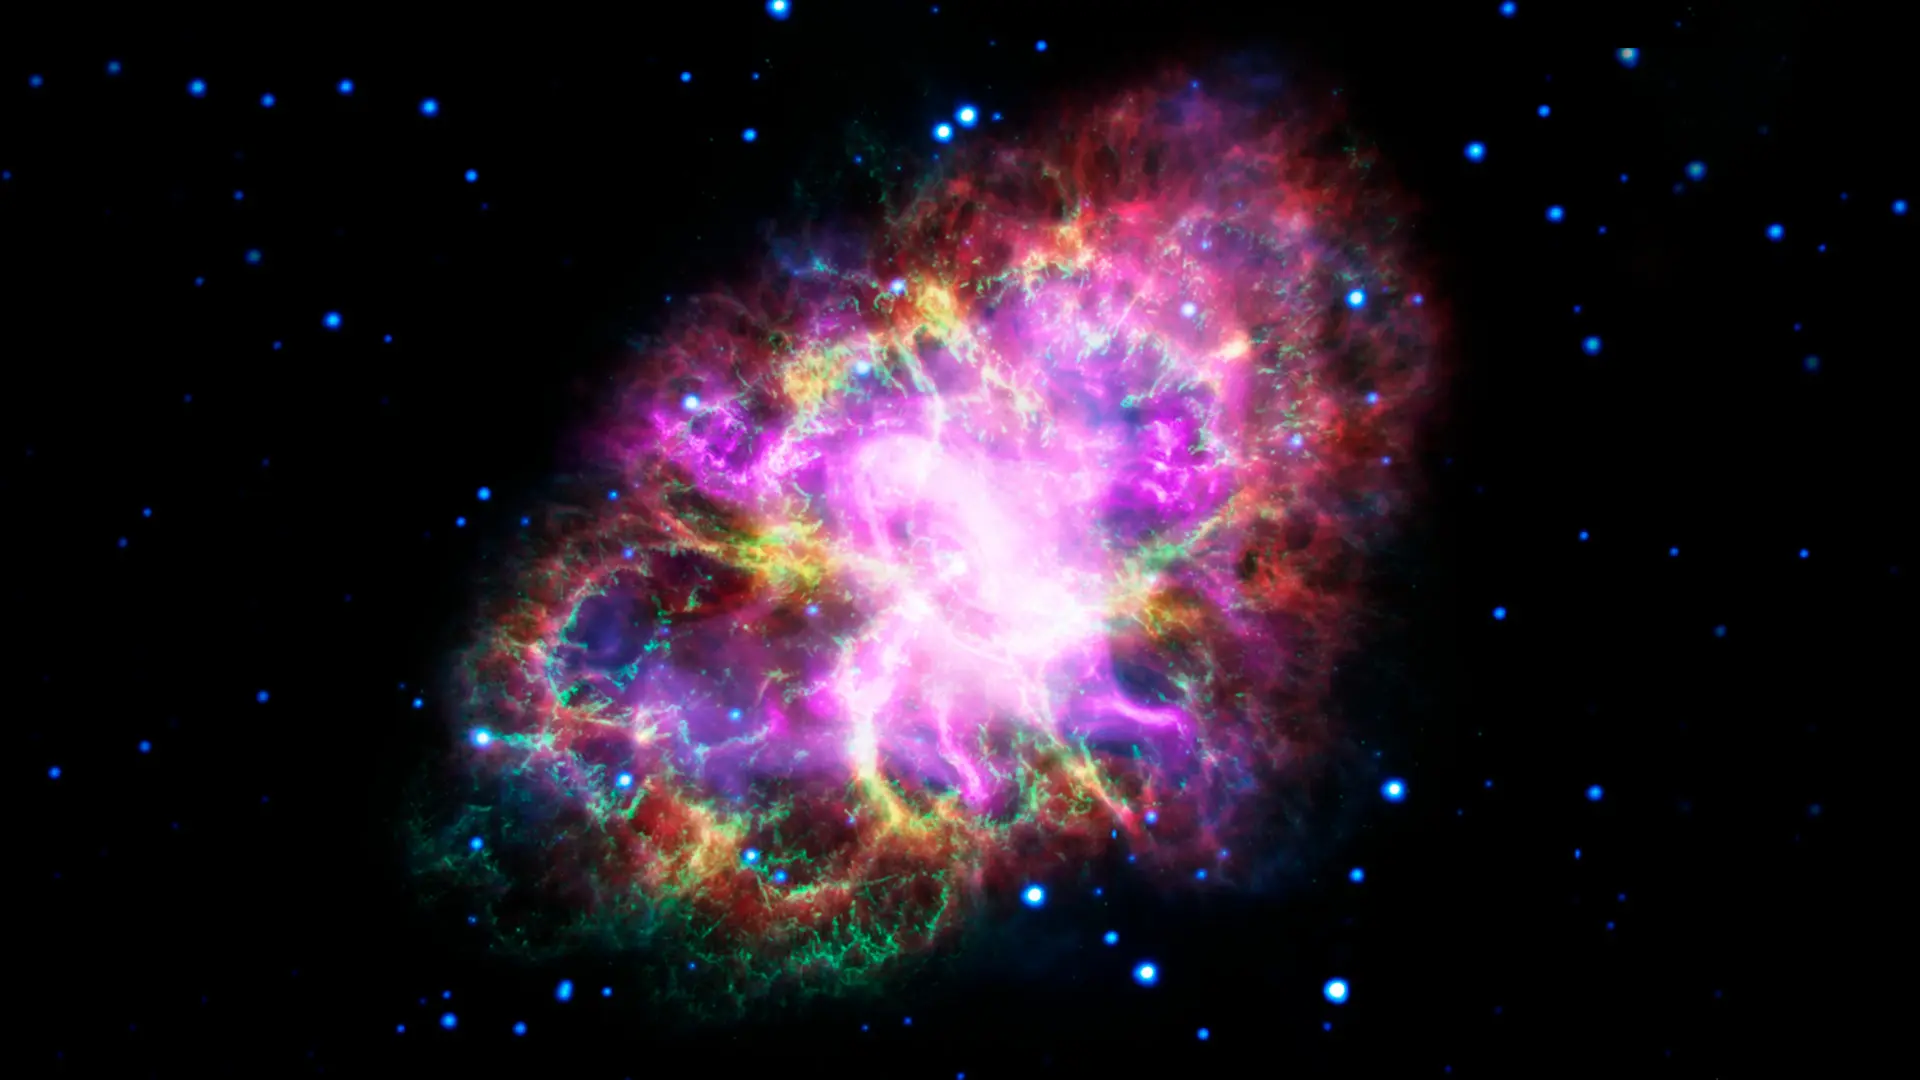 La Nebulosa del Cangrejo representa una típica nebulosa irregular